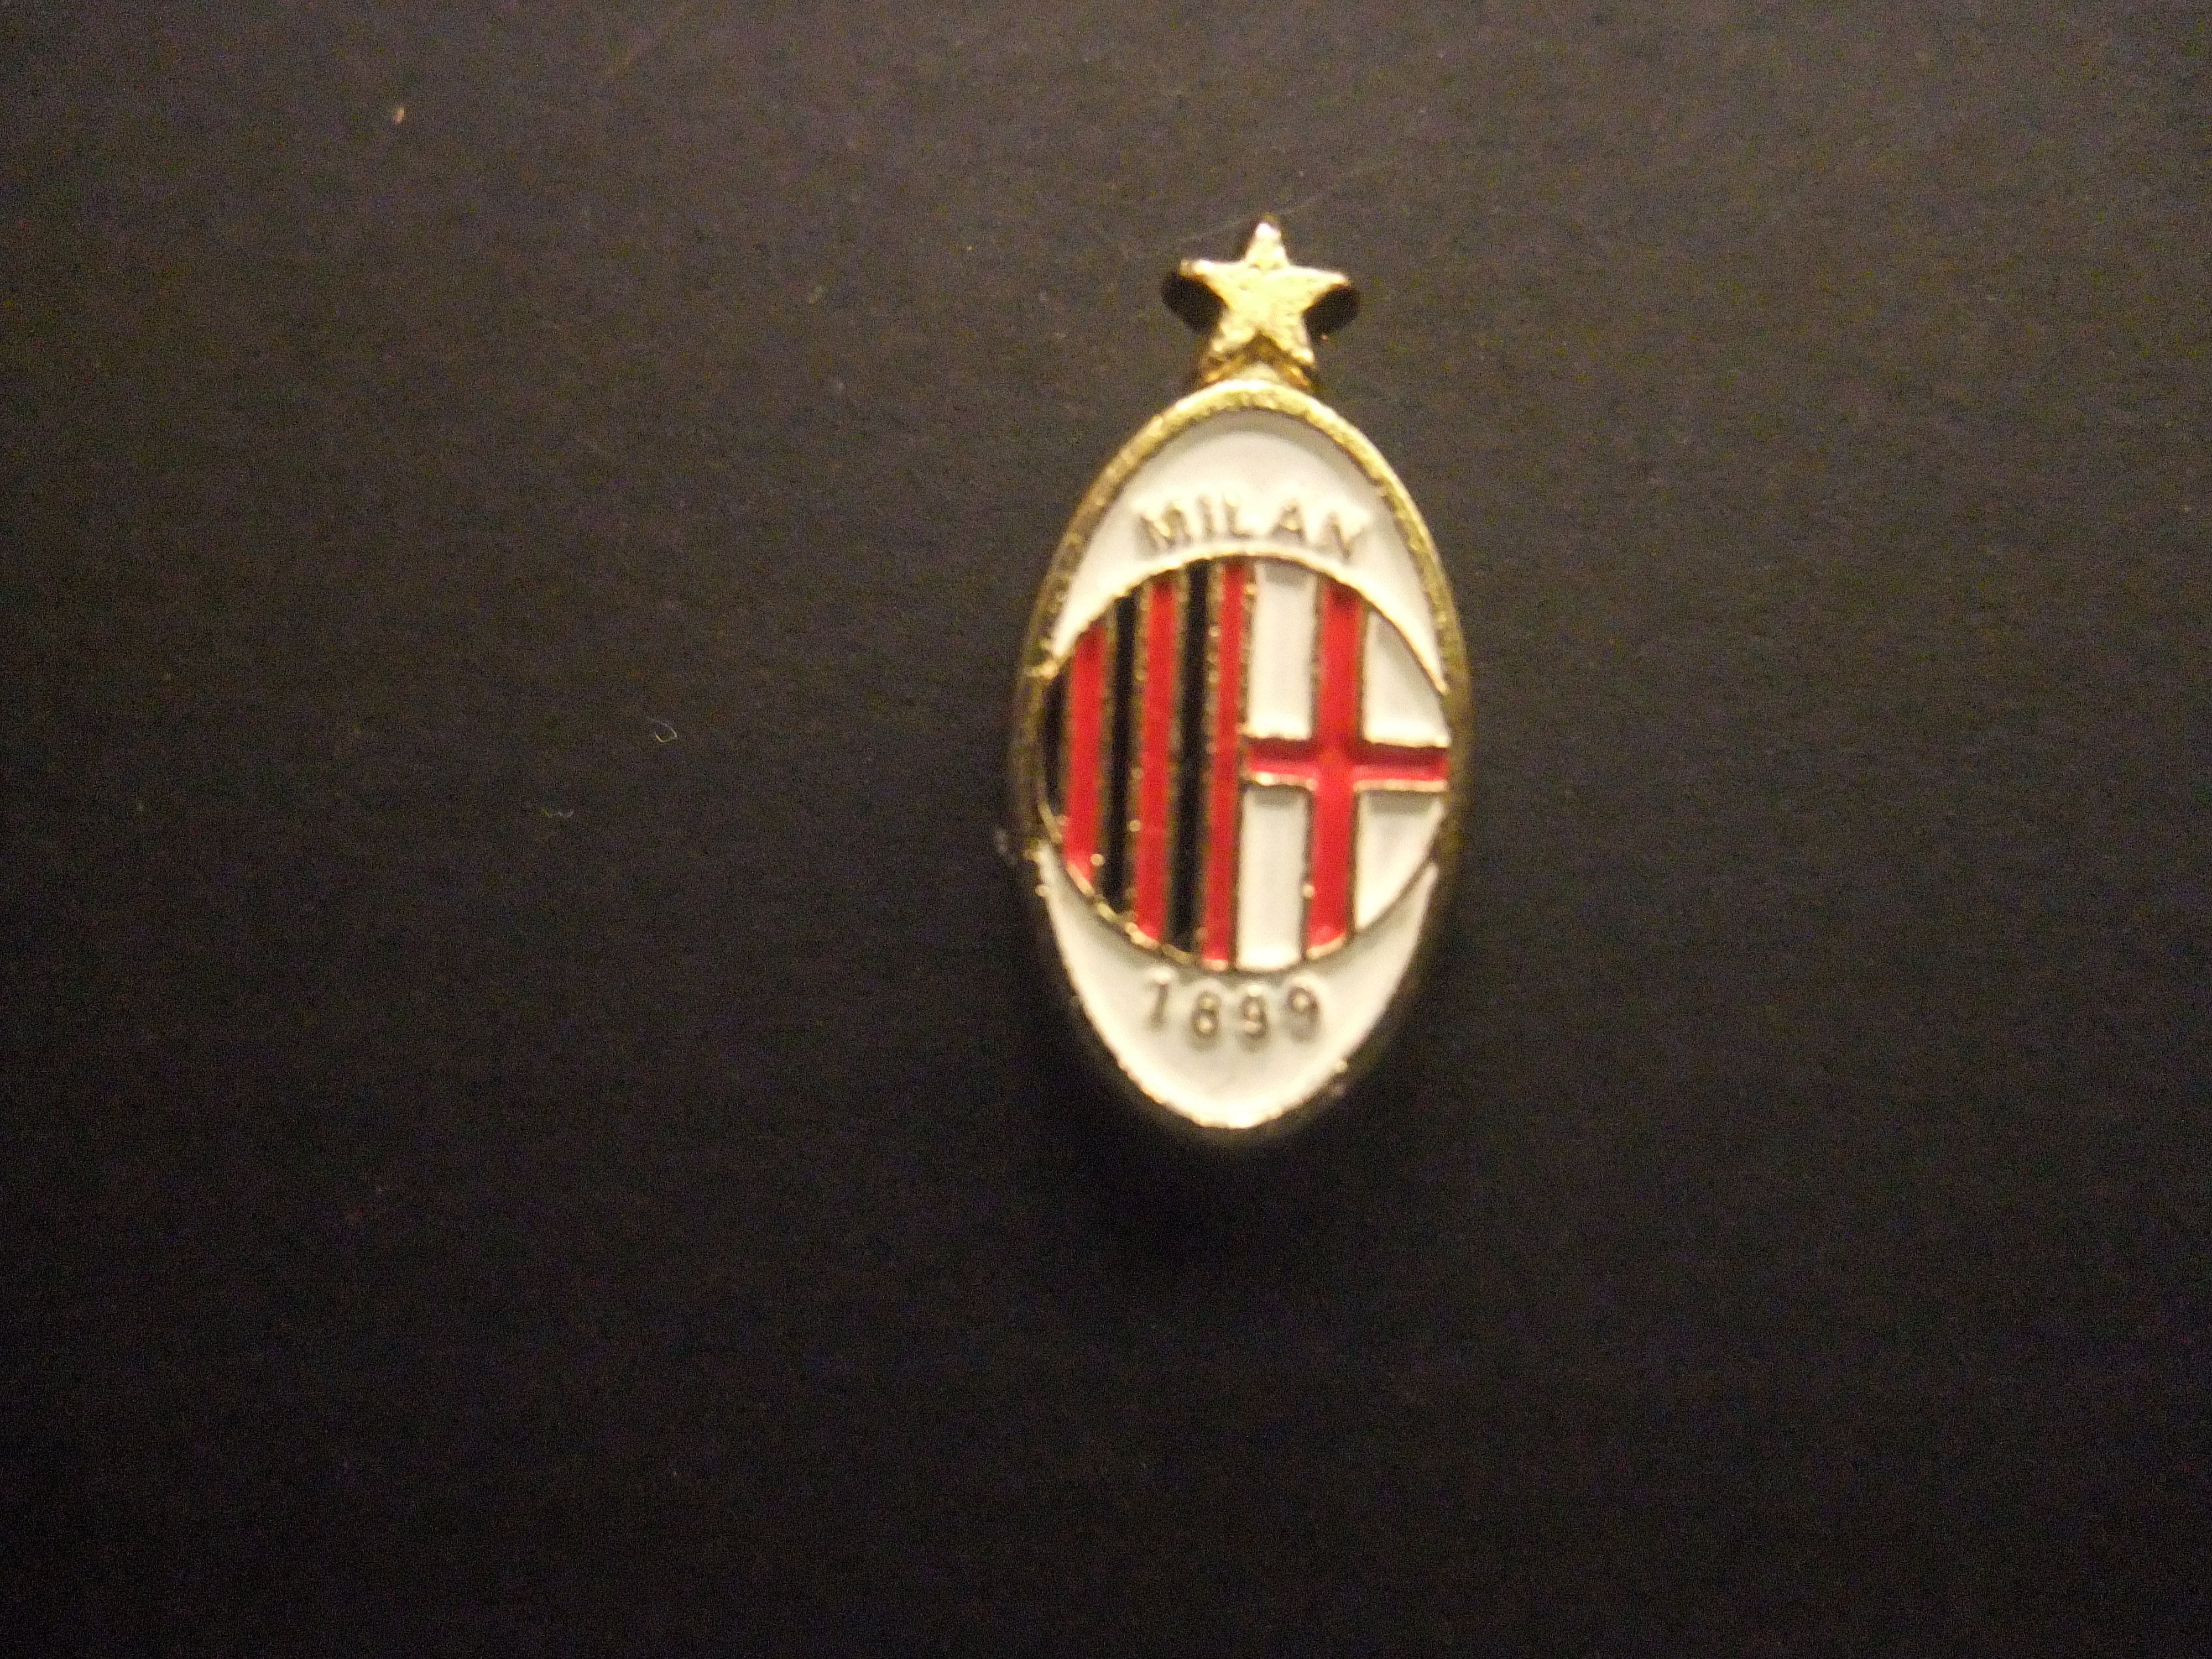 AC Milaan 1899 voetbalclub ( Italië) serie A logo met ster